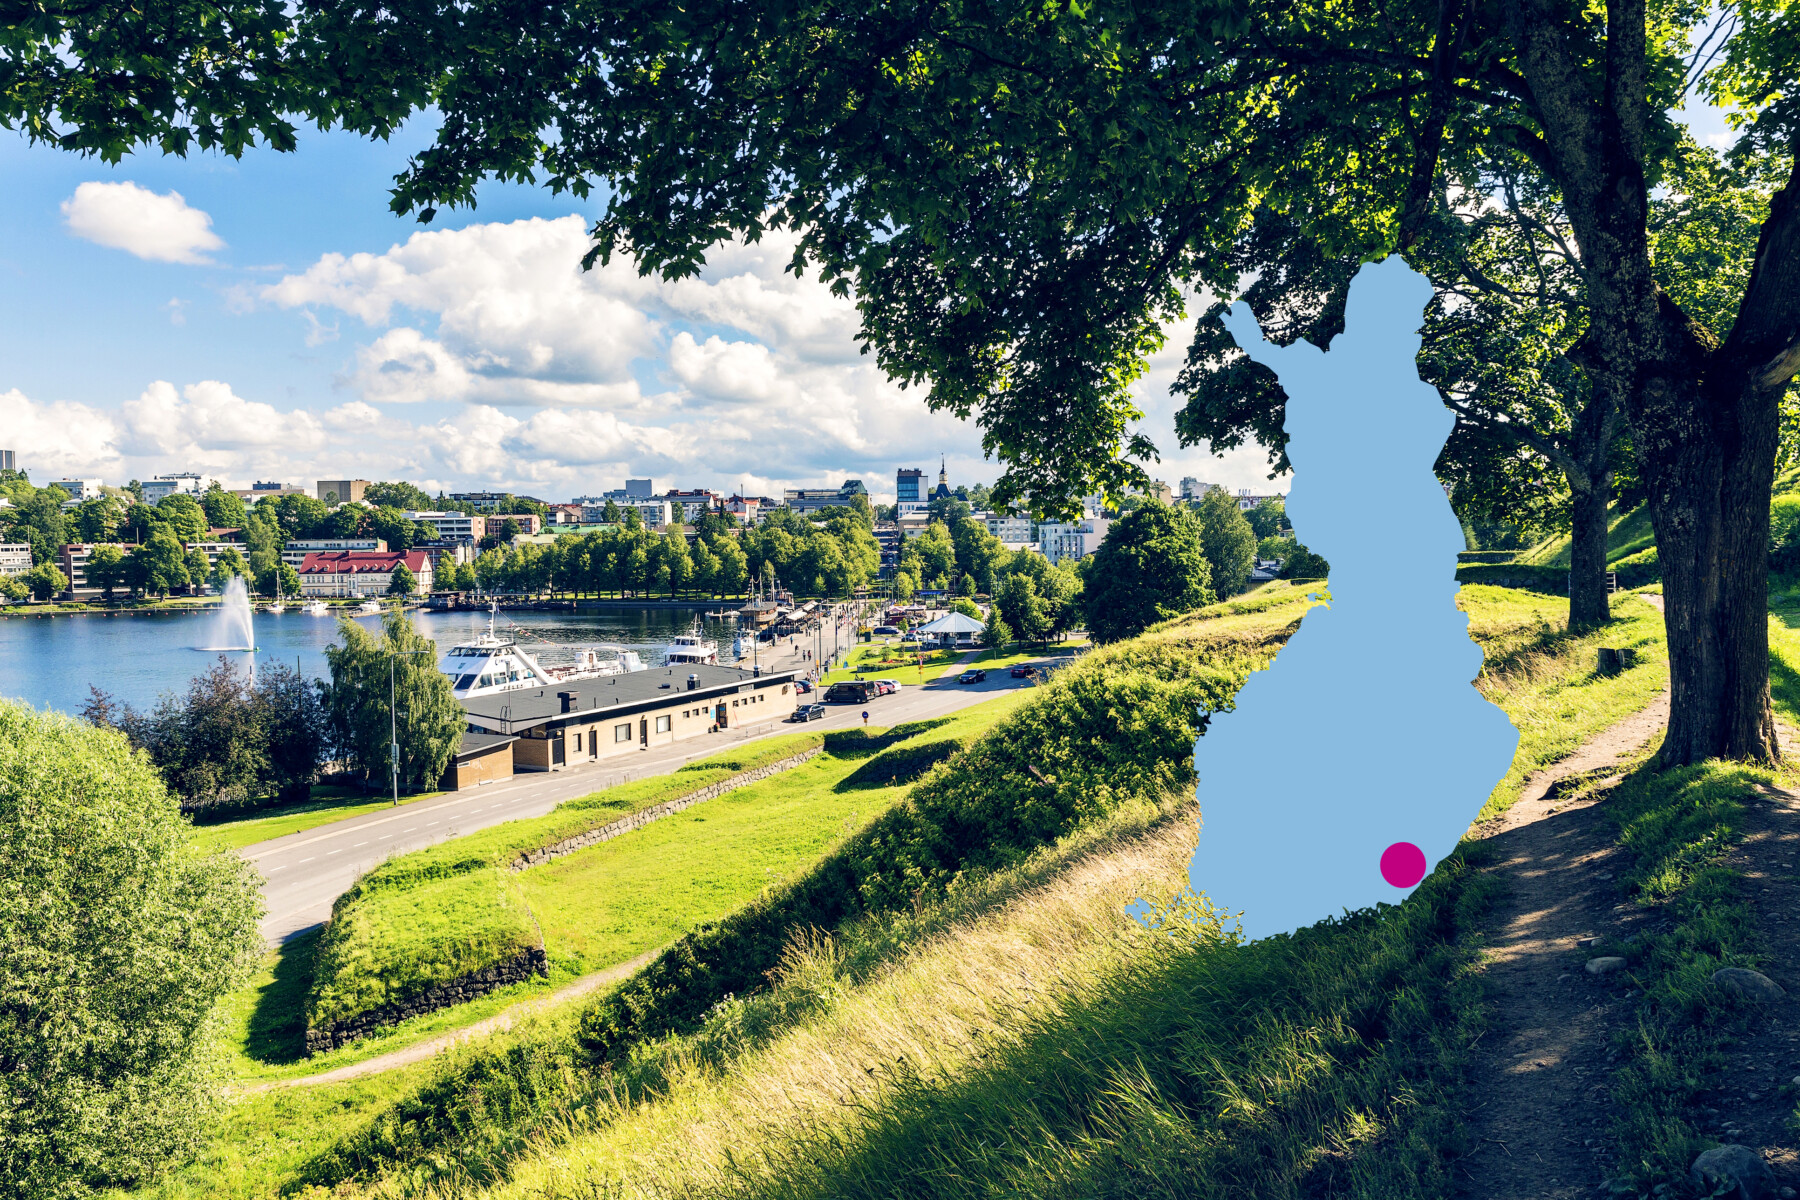 Différents bâtiments ainsi qu’une zone portuaire sont visibles du haut d’une colline verdoyante dominant un parc de Lappeenranta, une ville de Finlande du Sud-Est située au bord du lac Saimaa. 